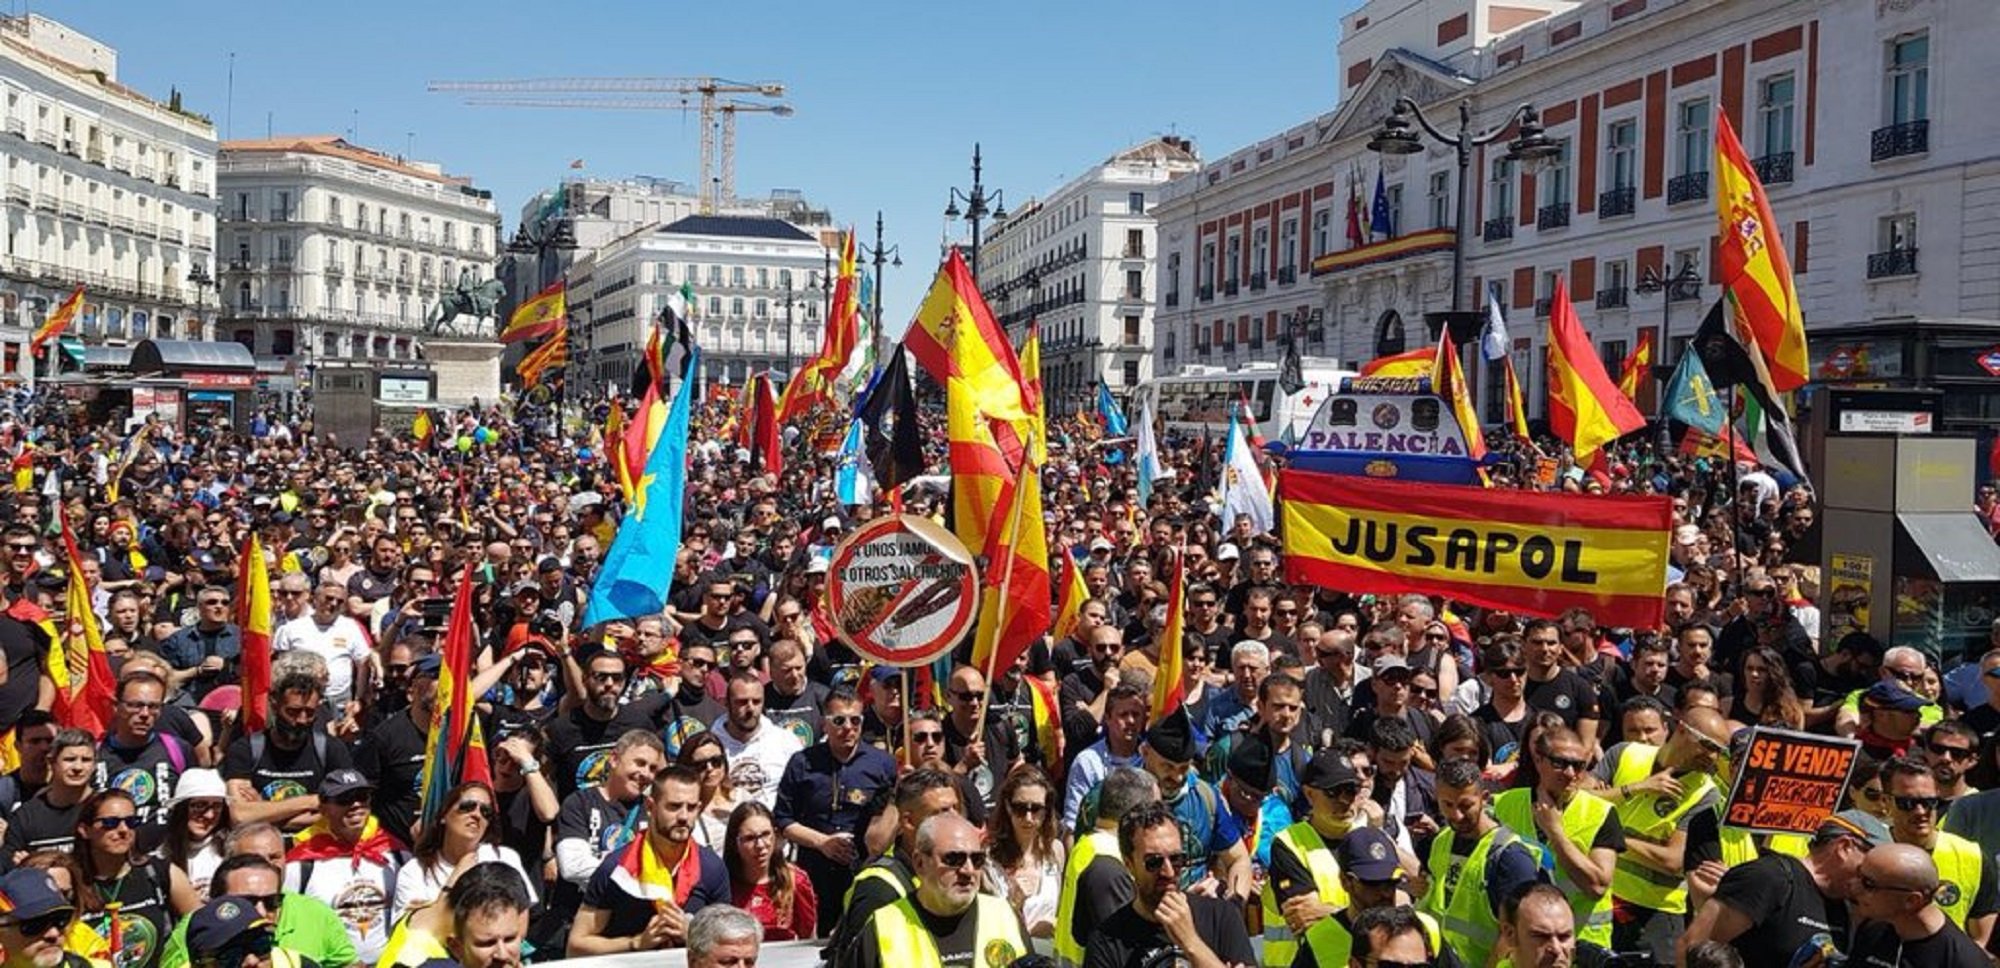 Policies i guàrdies civils defensors de la unitat d'Espanya es manifestaran contra l'amnistia